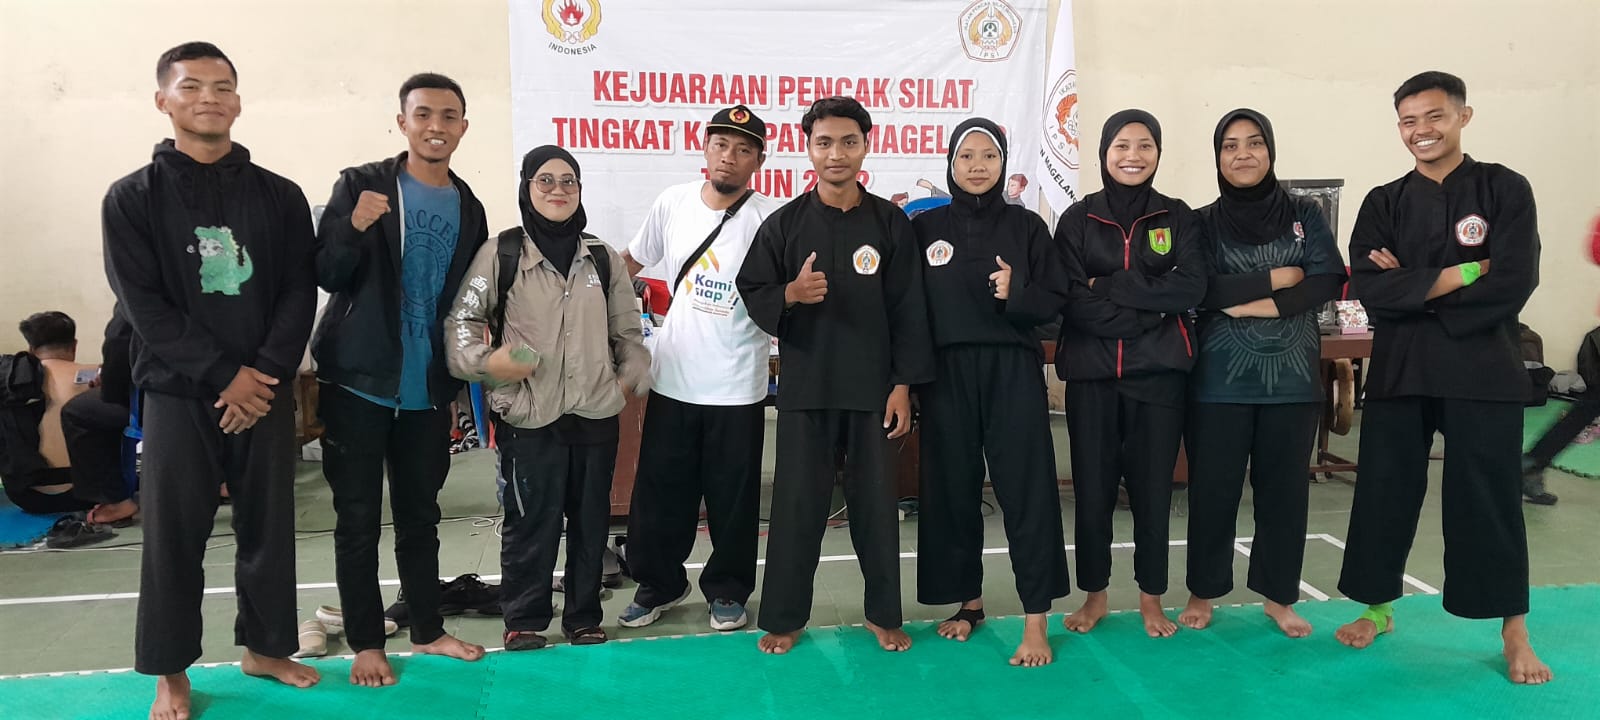 Foto Kejuaraan Pencak Silat Tingkat Kabupaten Magelang (KEJURKAB) tahun 2022